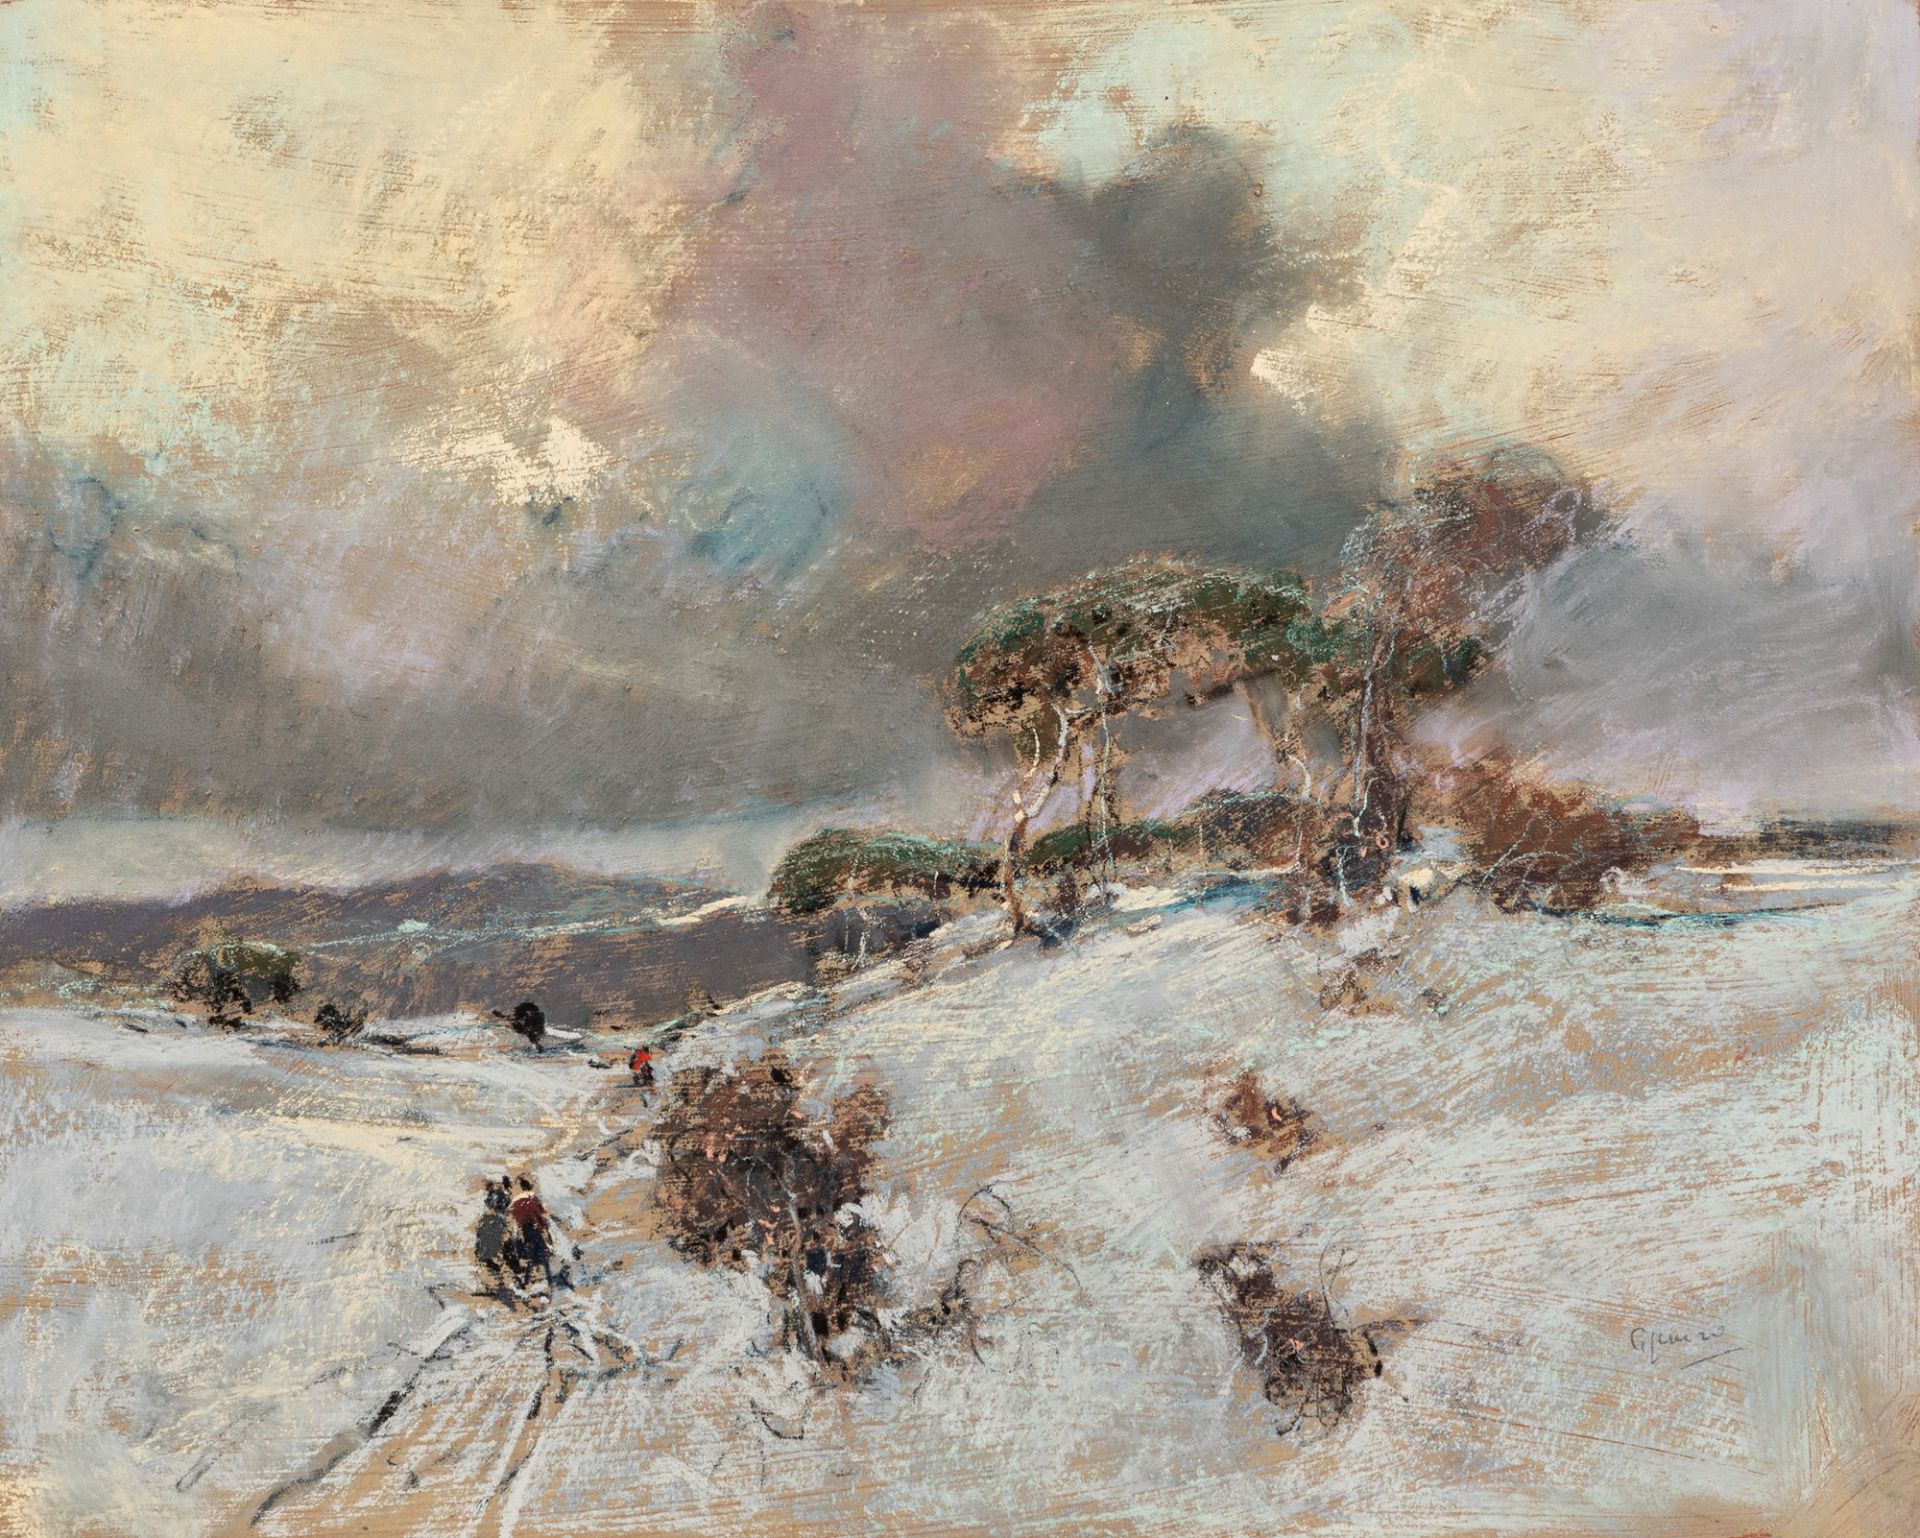 Giuseppe Casciaro (Ortelle 1863-Napoli 1945) - Winter landscape